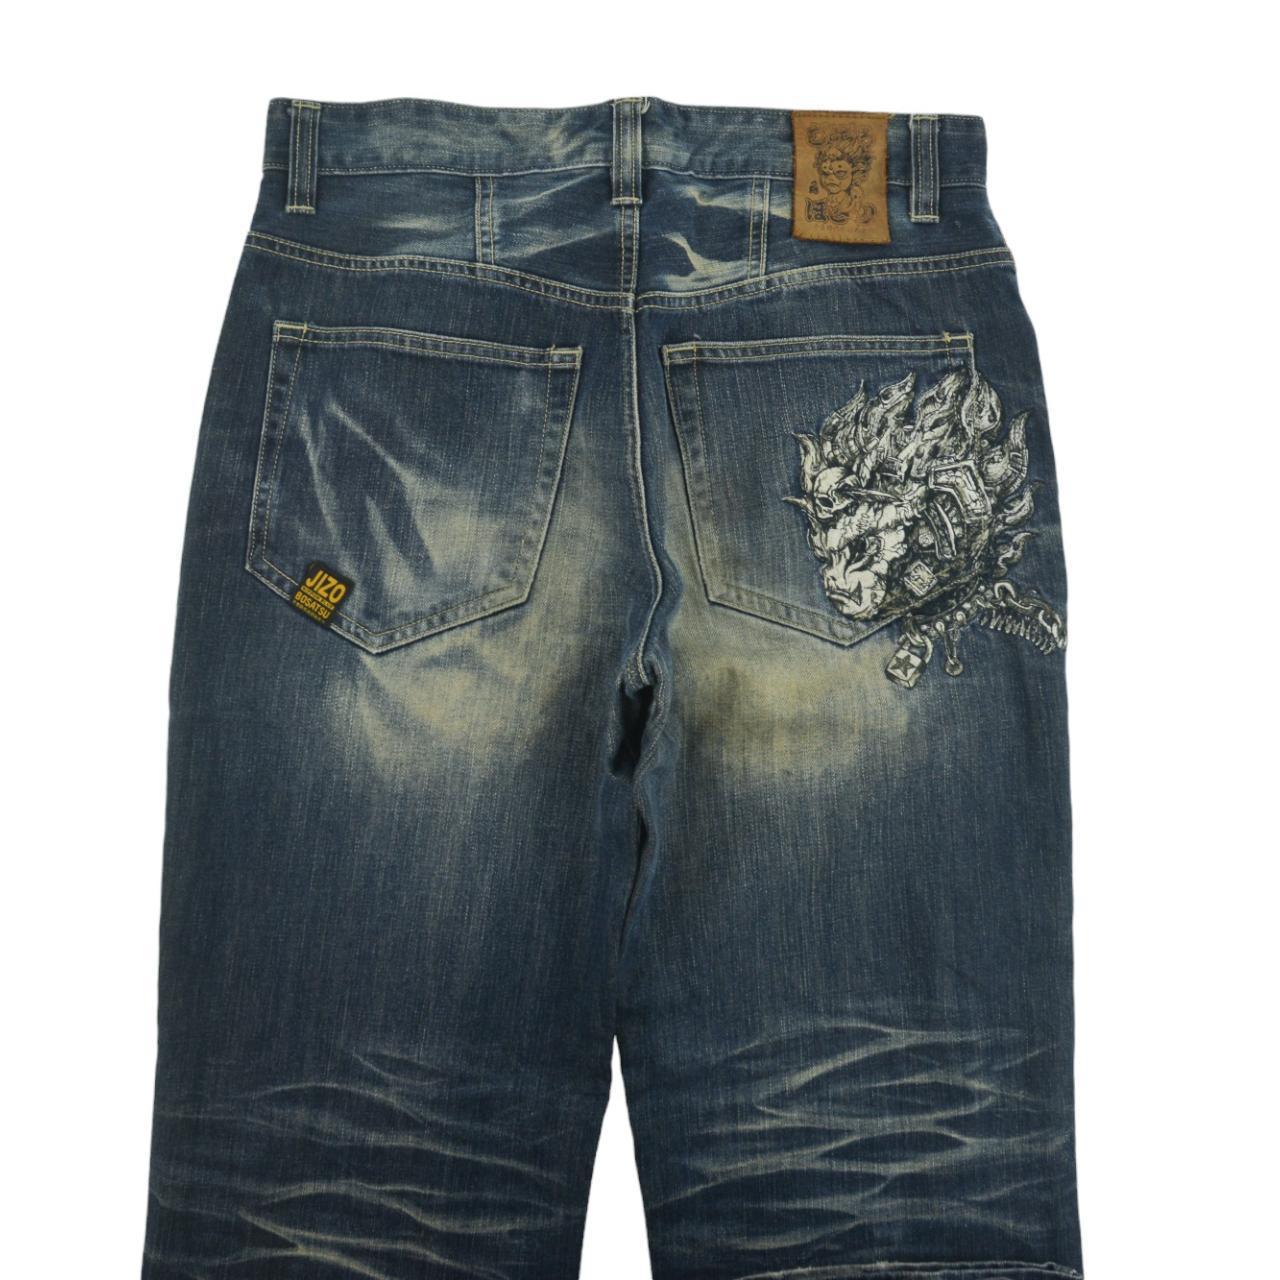 Vintage Jizo Japanese Denim Jeans Size W33 - Known Source